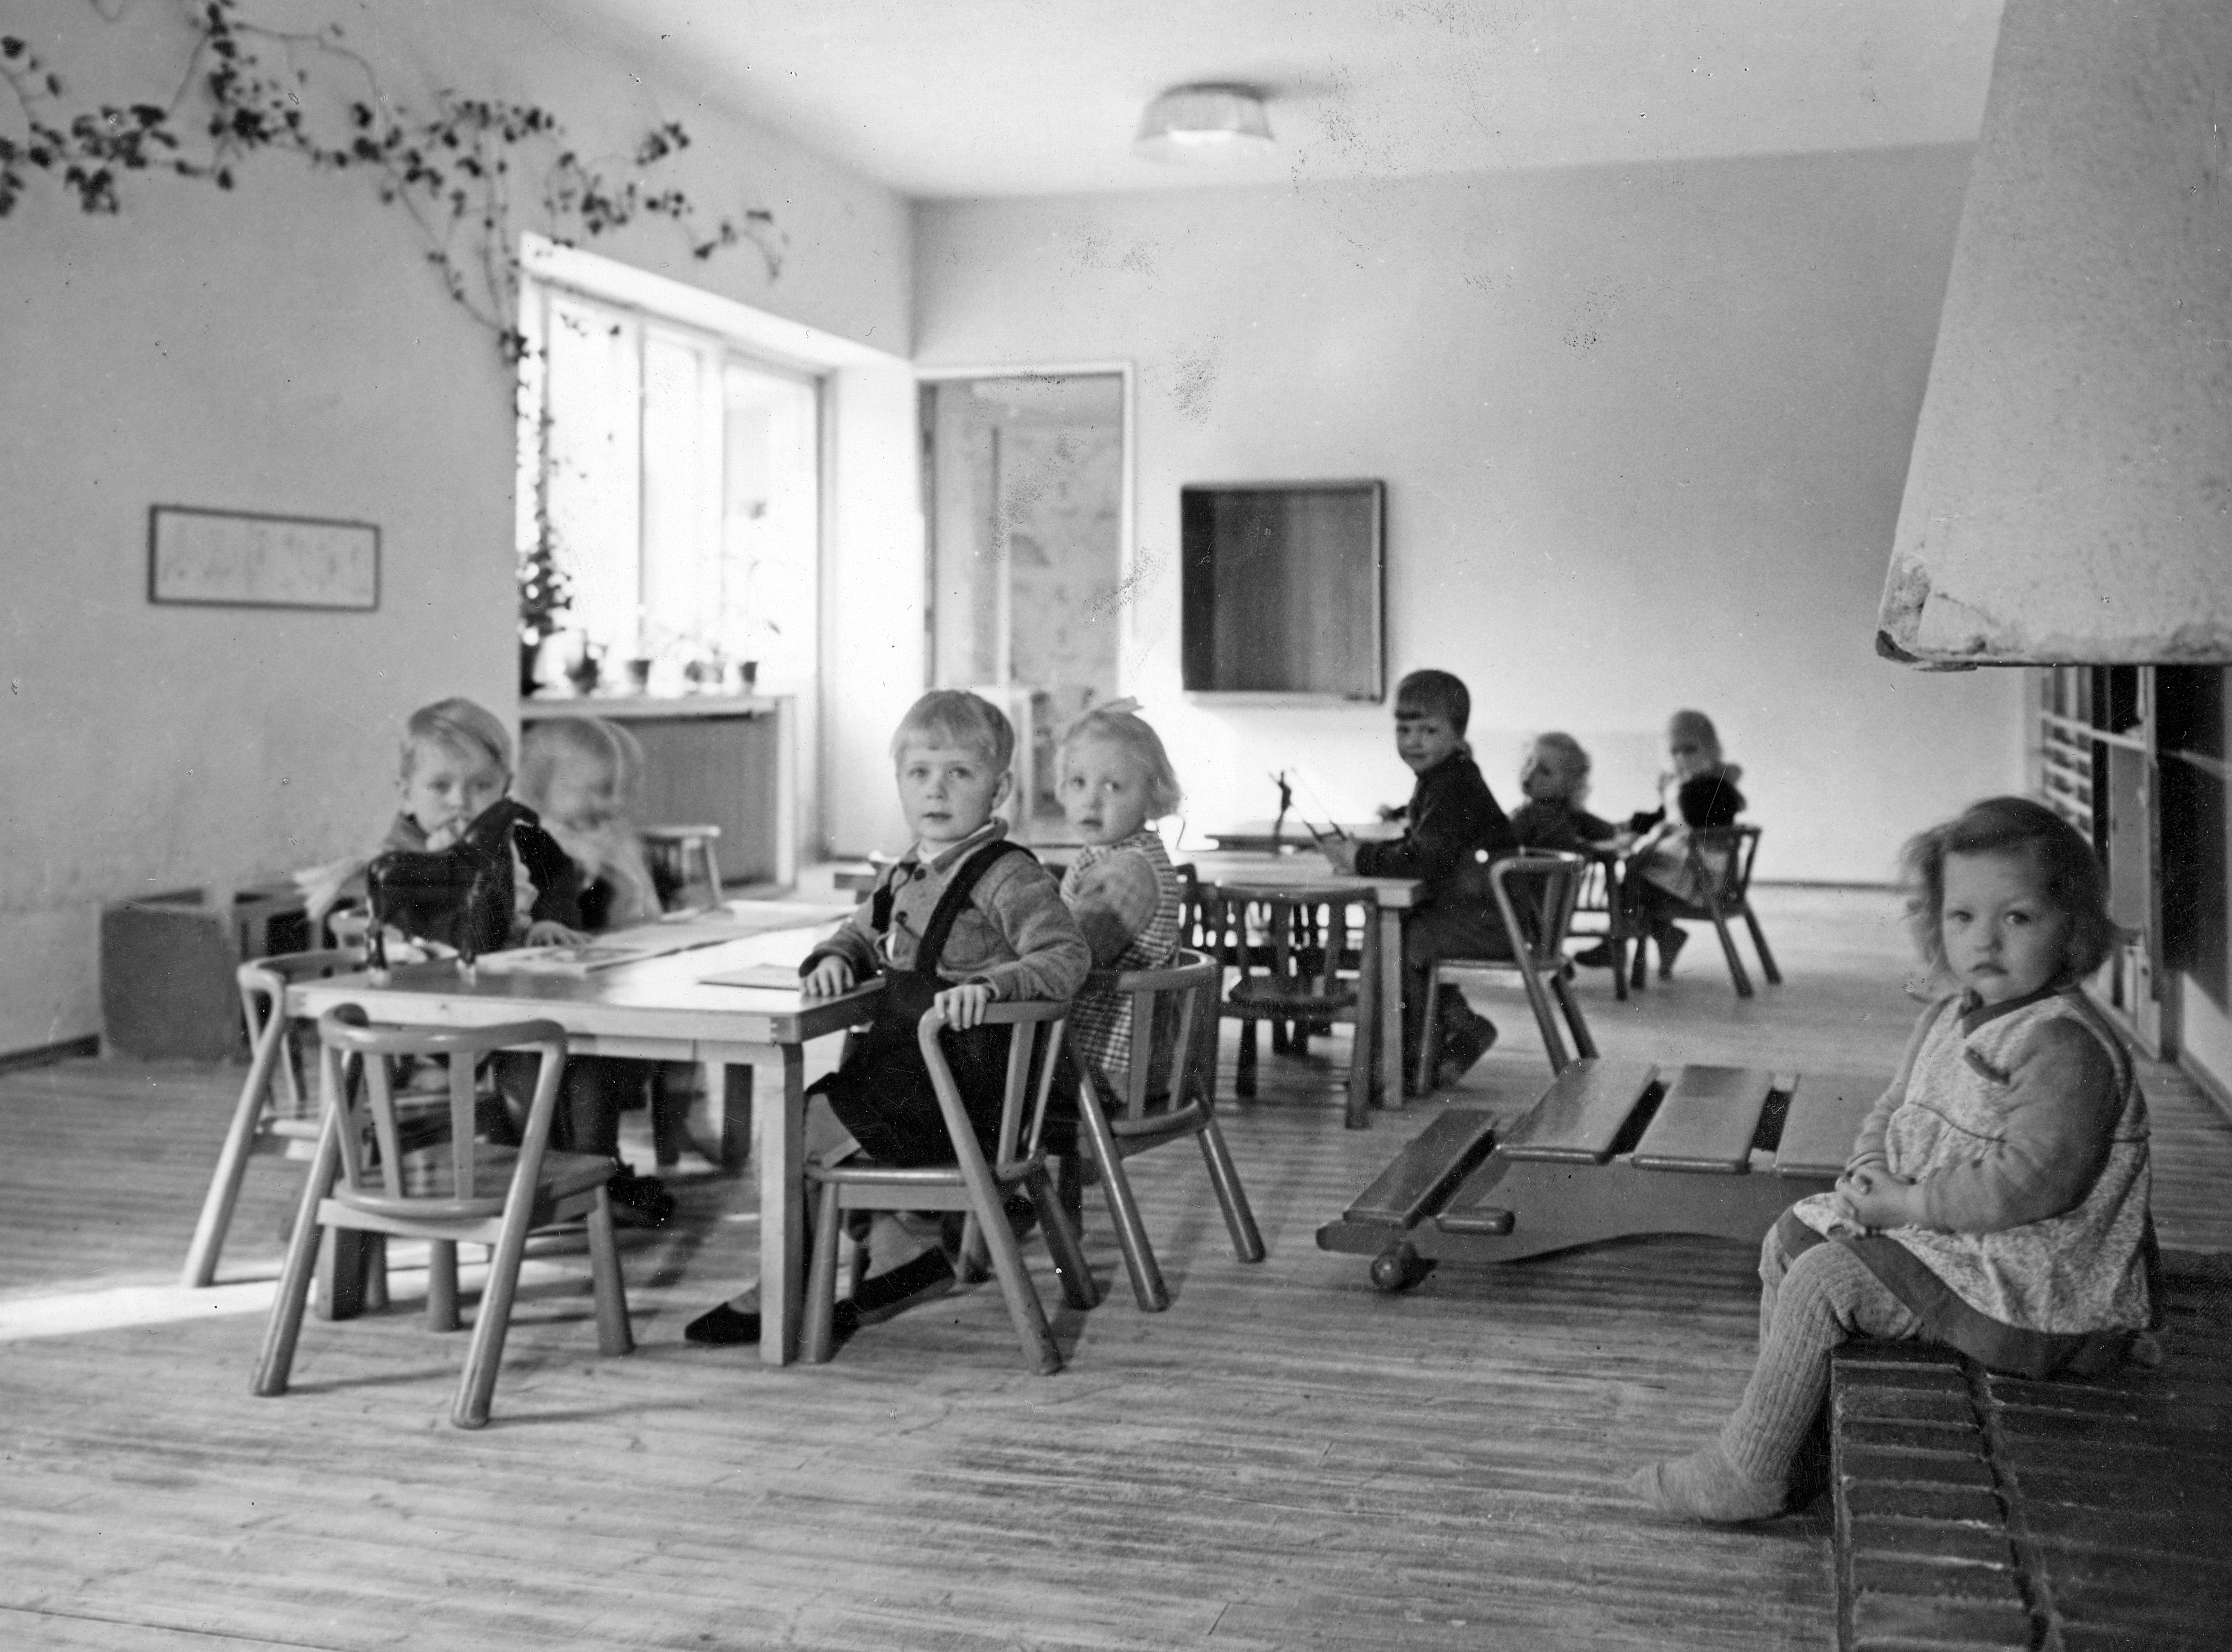 Mustavalkoisessa valokuvassa kahdeksan päiväkoti-ikäistä lasta istuu kameraan katsoen pienten pöytien ääressä valoisassa huonetilassa. Yksi lapsista istuu vasemmalla olevan takan reunalla.